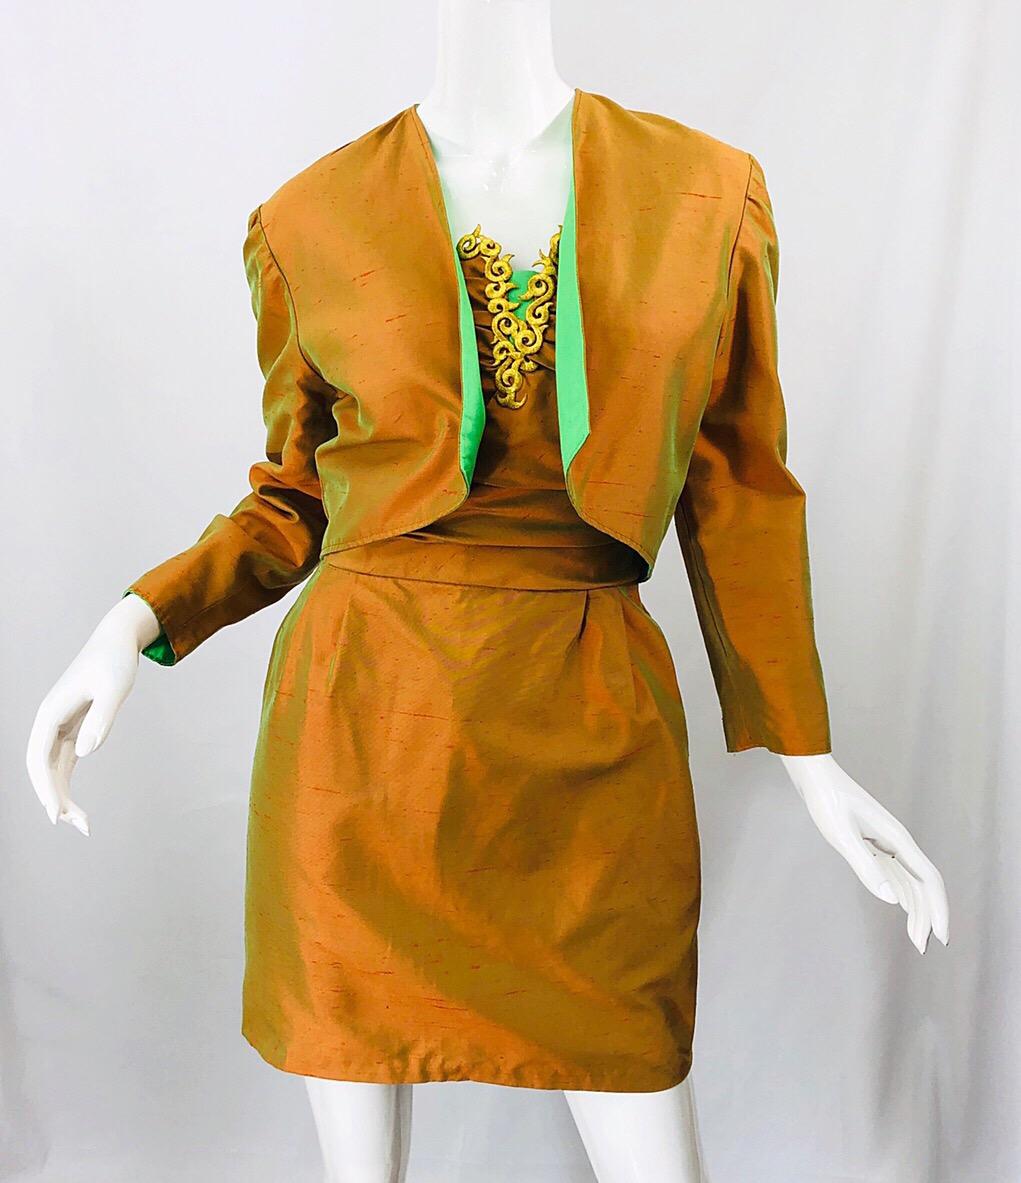 Magnifique robe bustier métallique orange des années 1990 et veste boléro réversible assortie ! La mini-robe sans bretelles présente un corsage ajusté et une jupe souple. Broderie dorée le long du buste avec une touche de vert au centre du buste